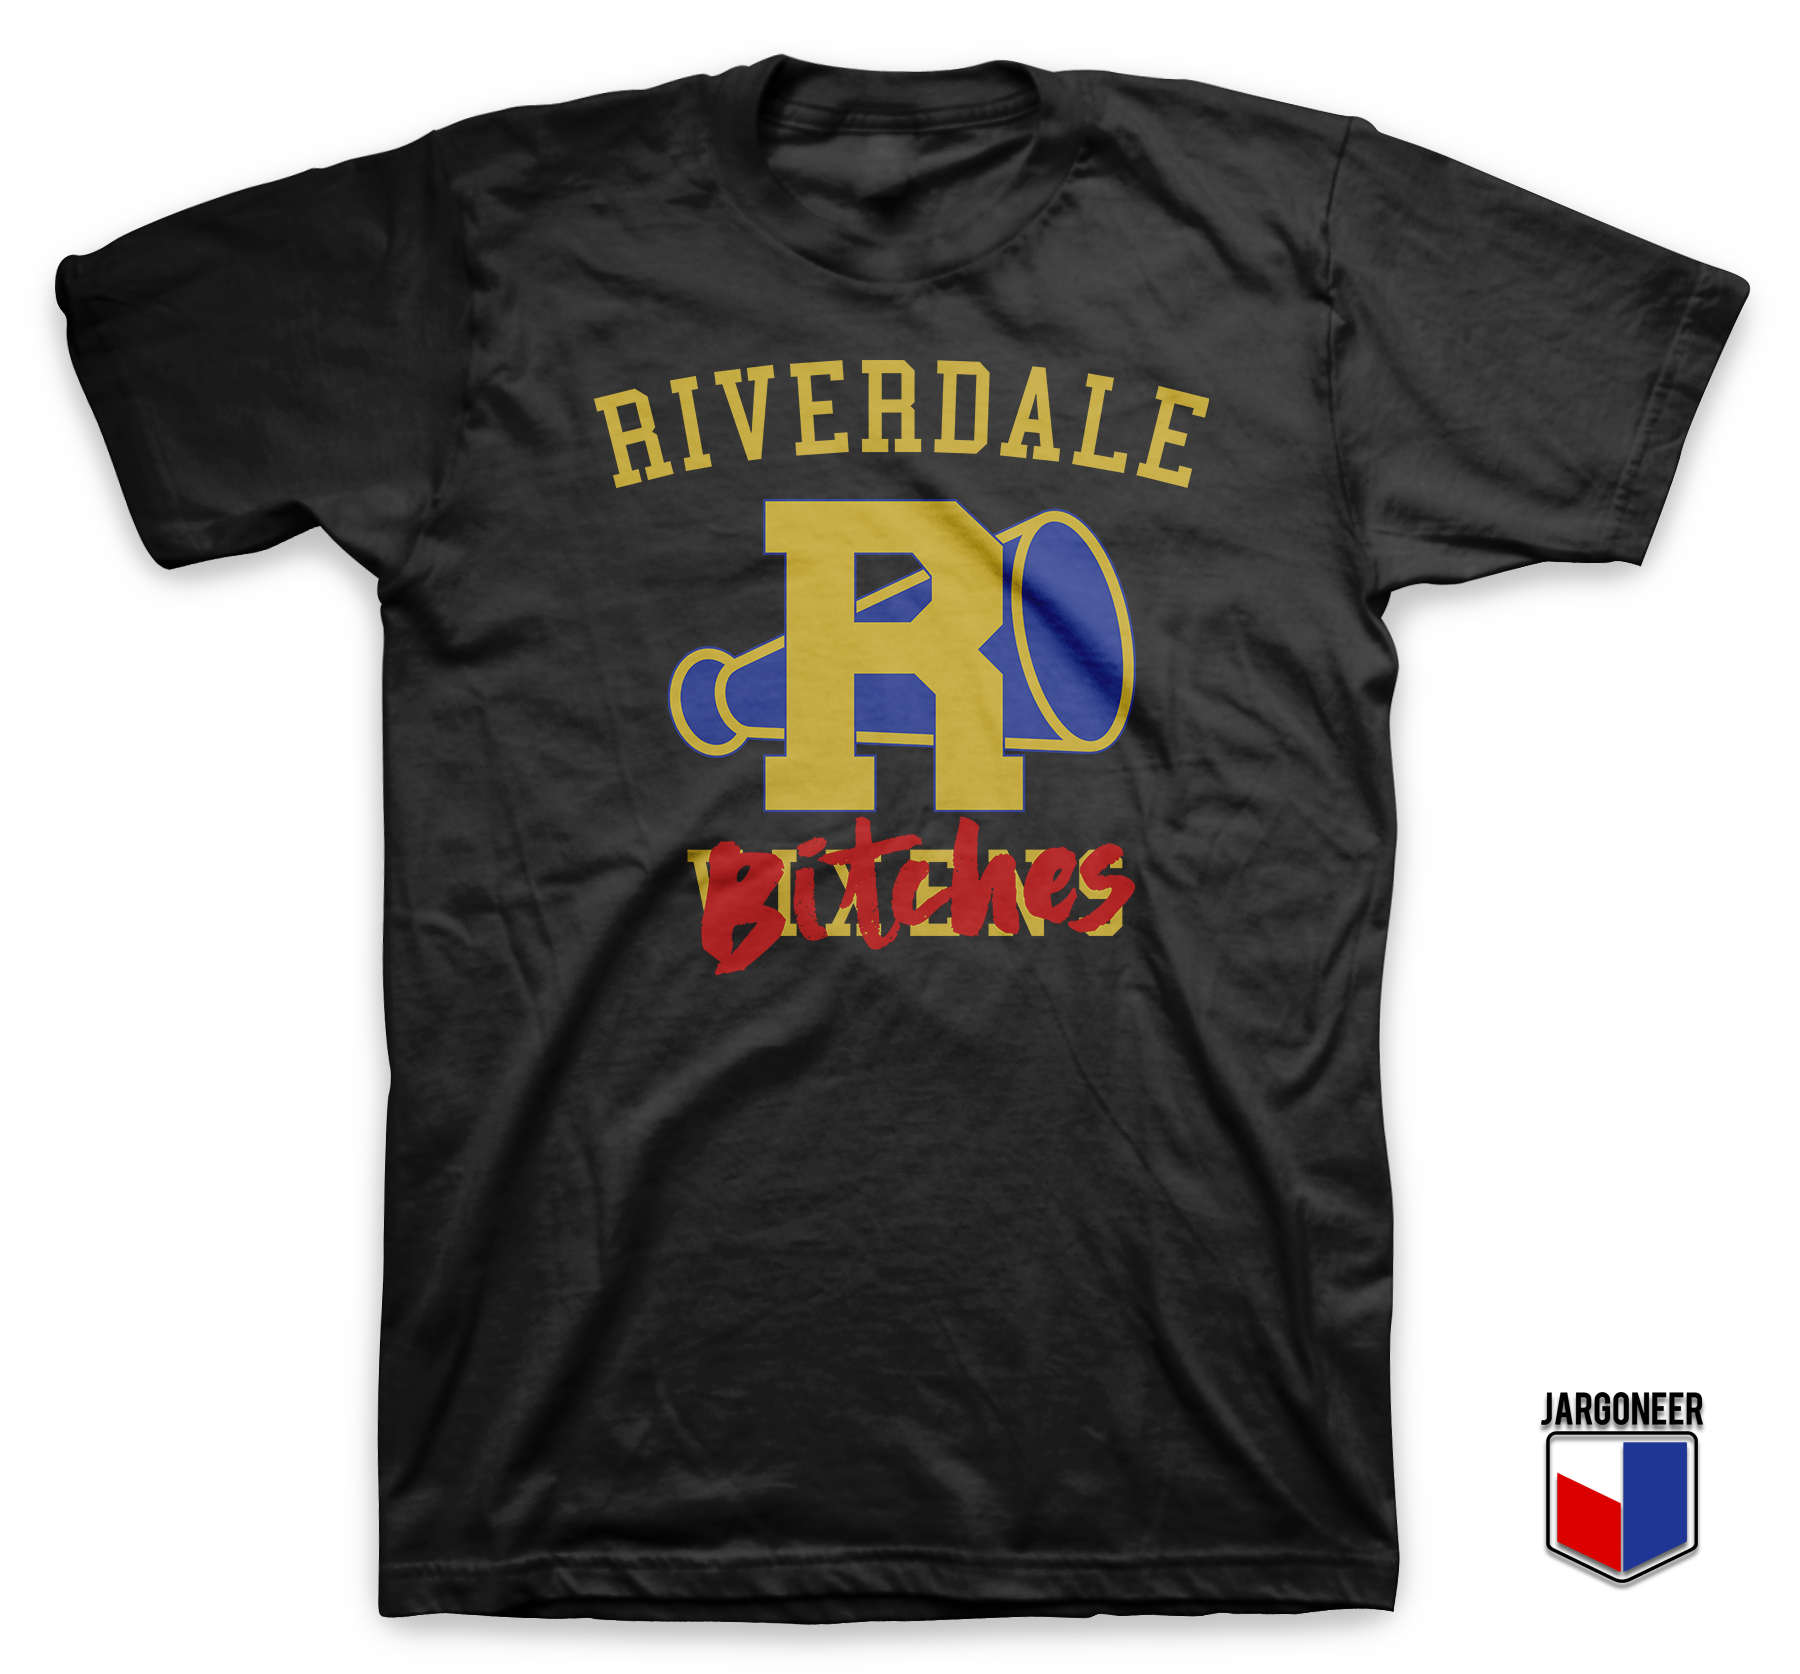 Riverdale Bitches Black T Shirt - Shop Unique Graphic Cool Shirt Designs